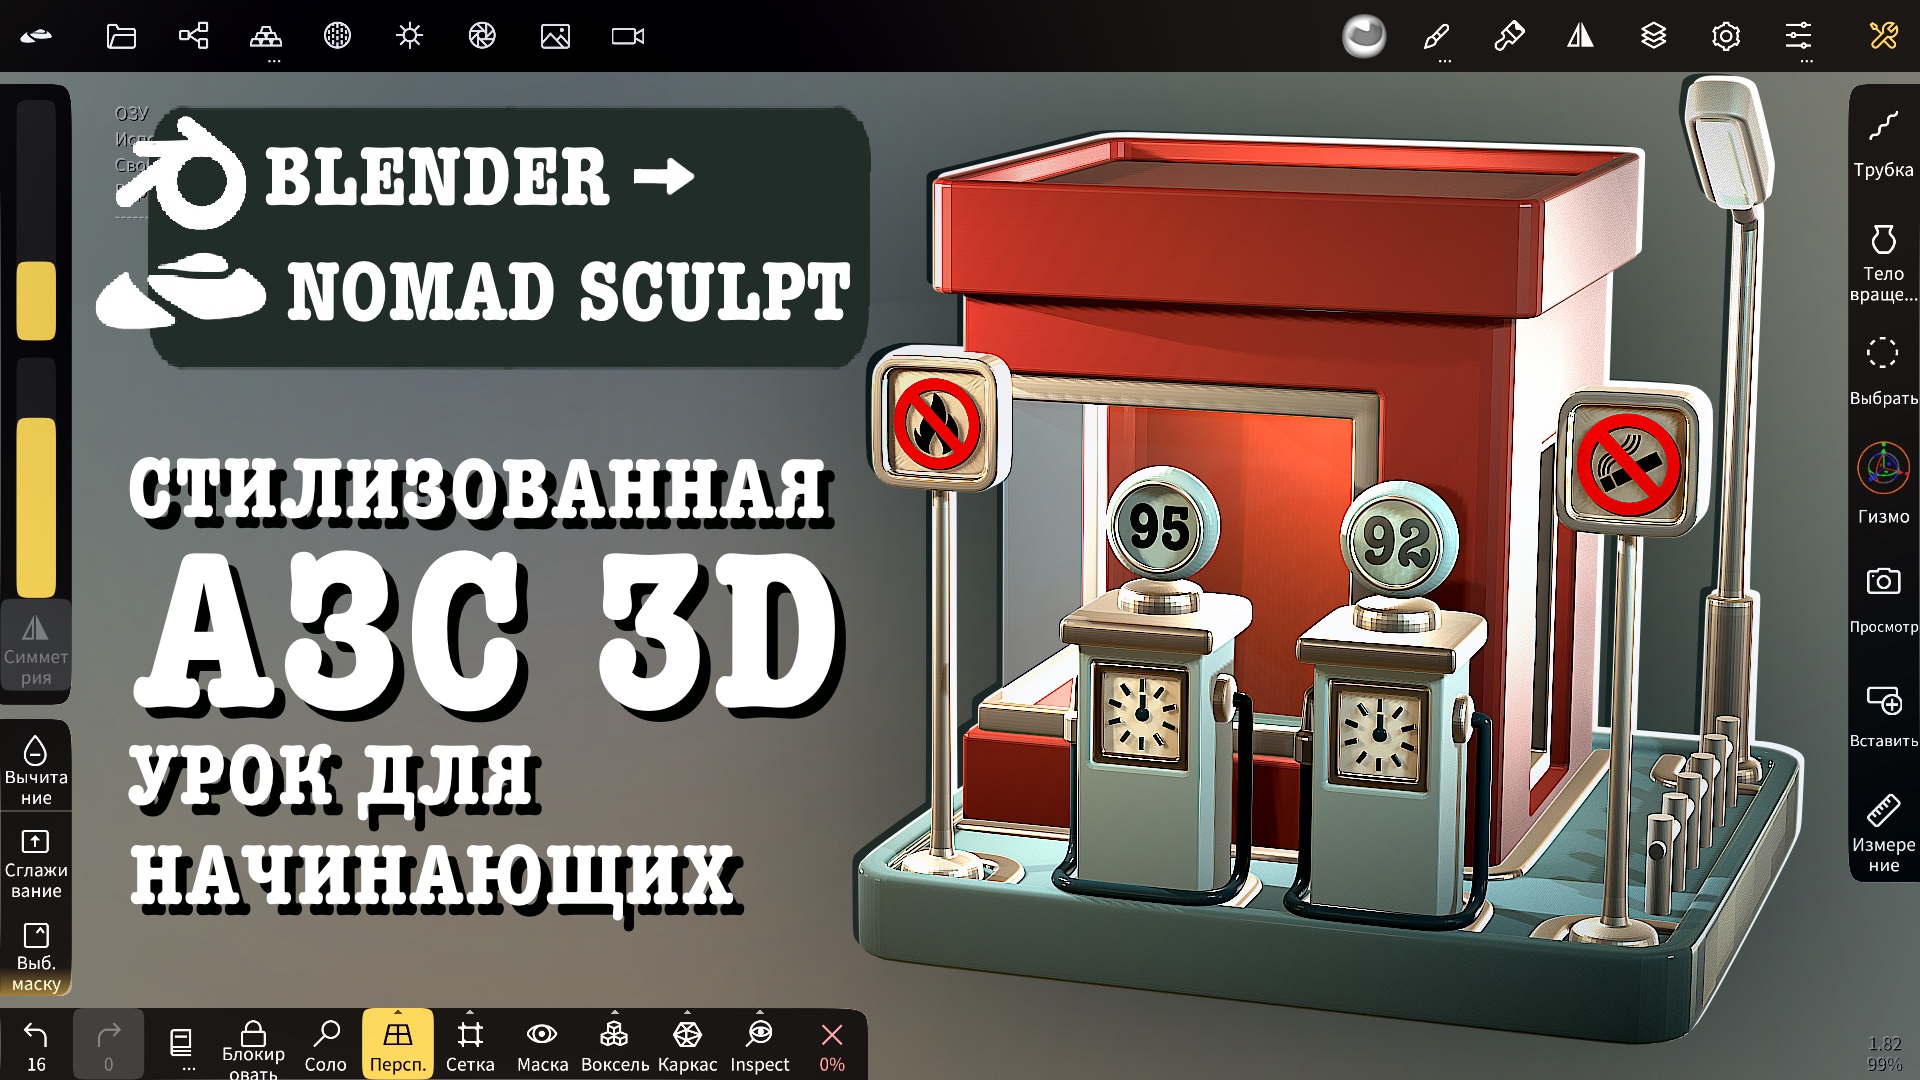 Стилизованная АЗС: из Blender в Nomad Sculpt. Уроки 3д для начинающих